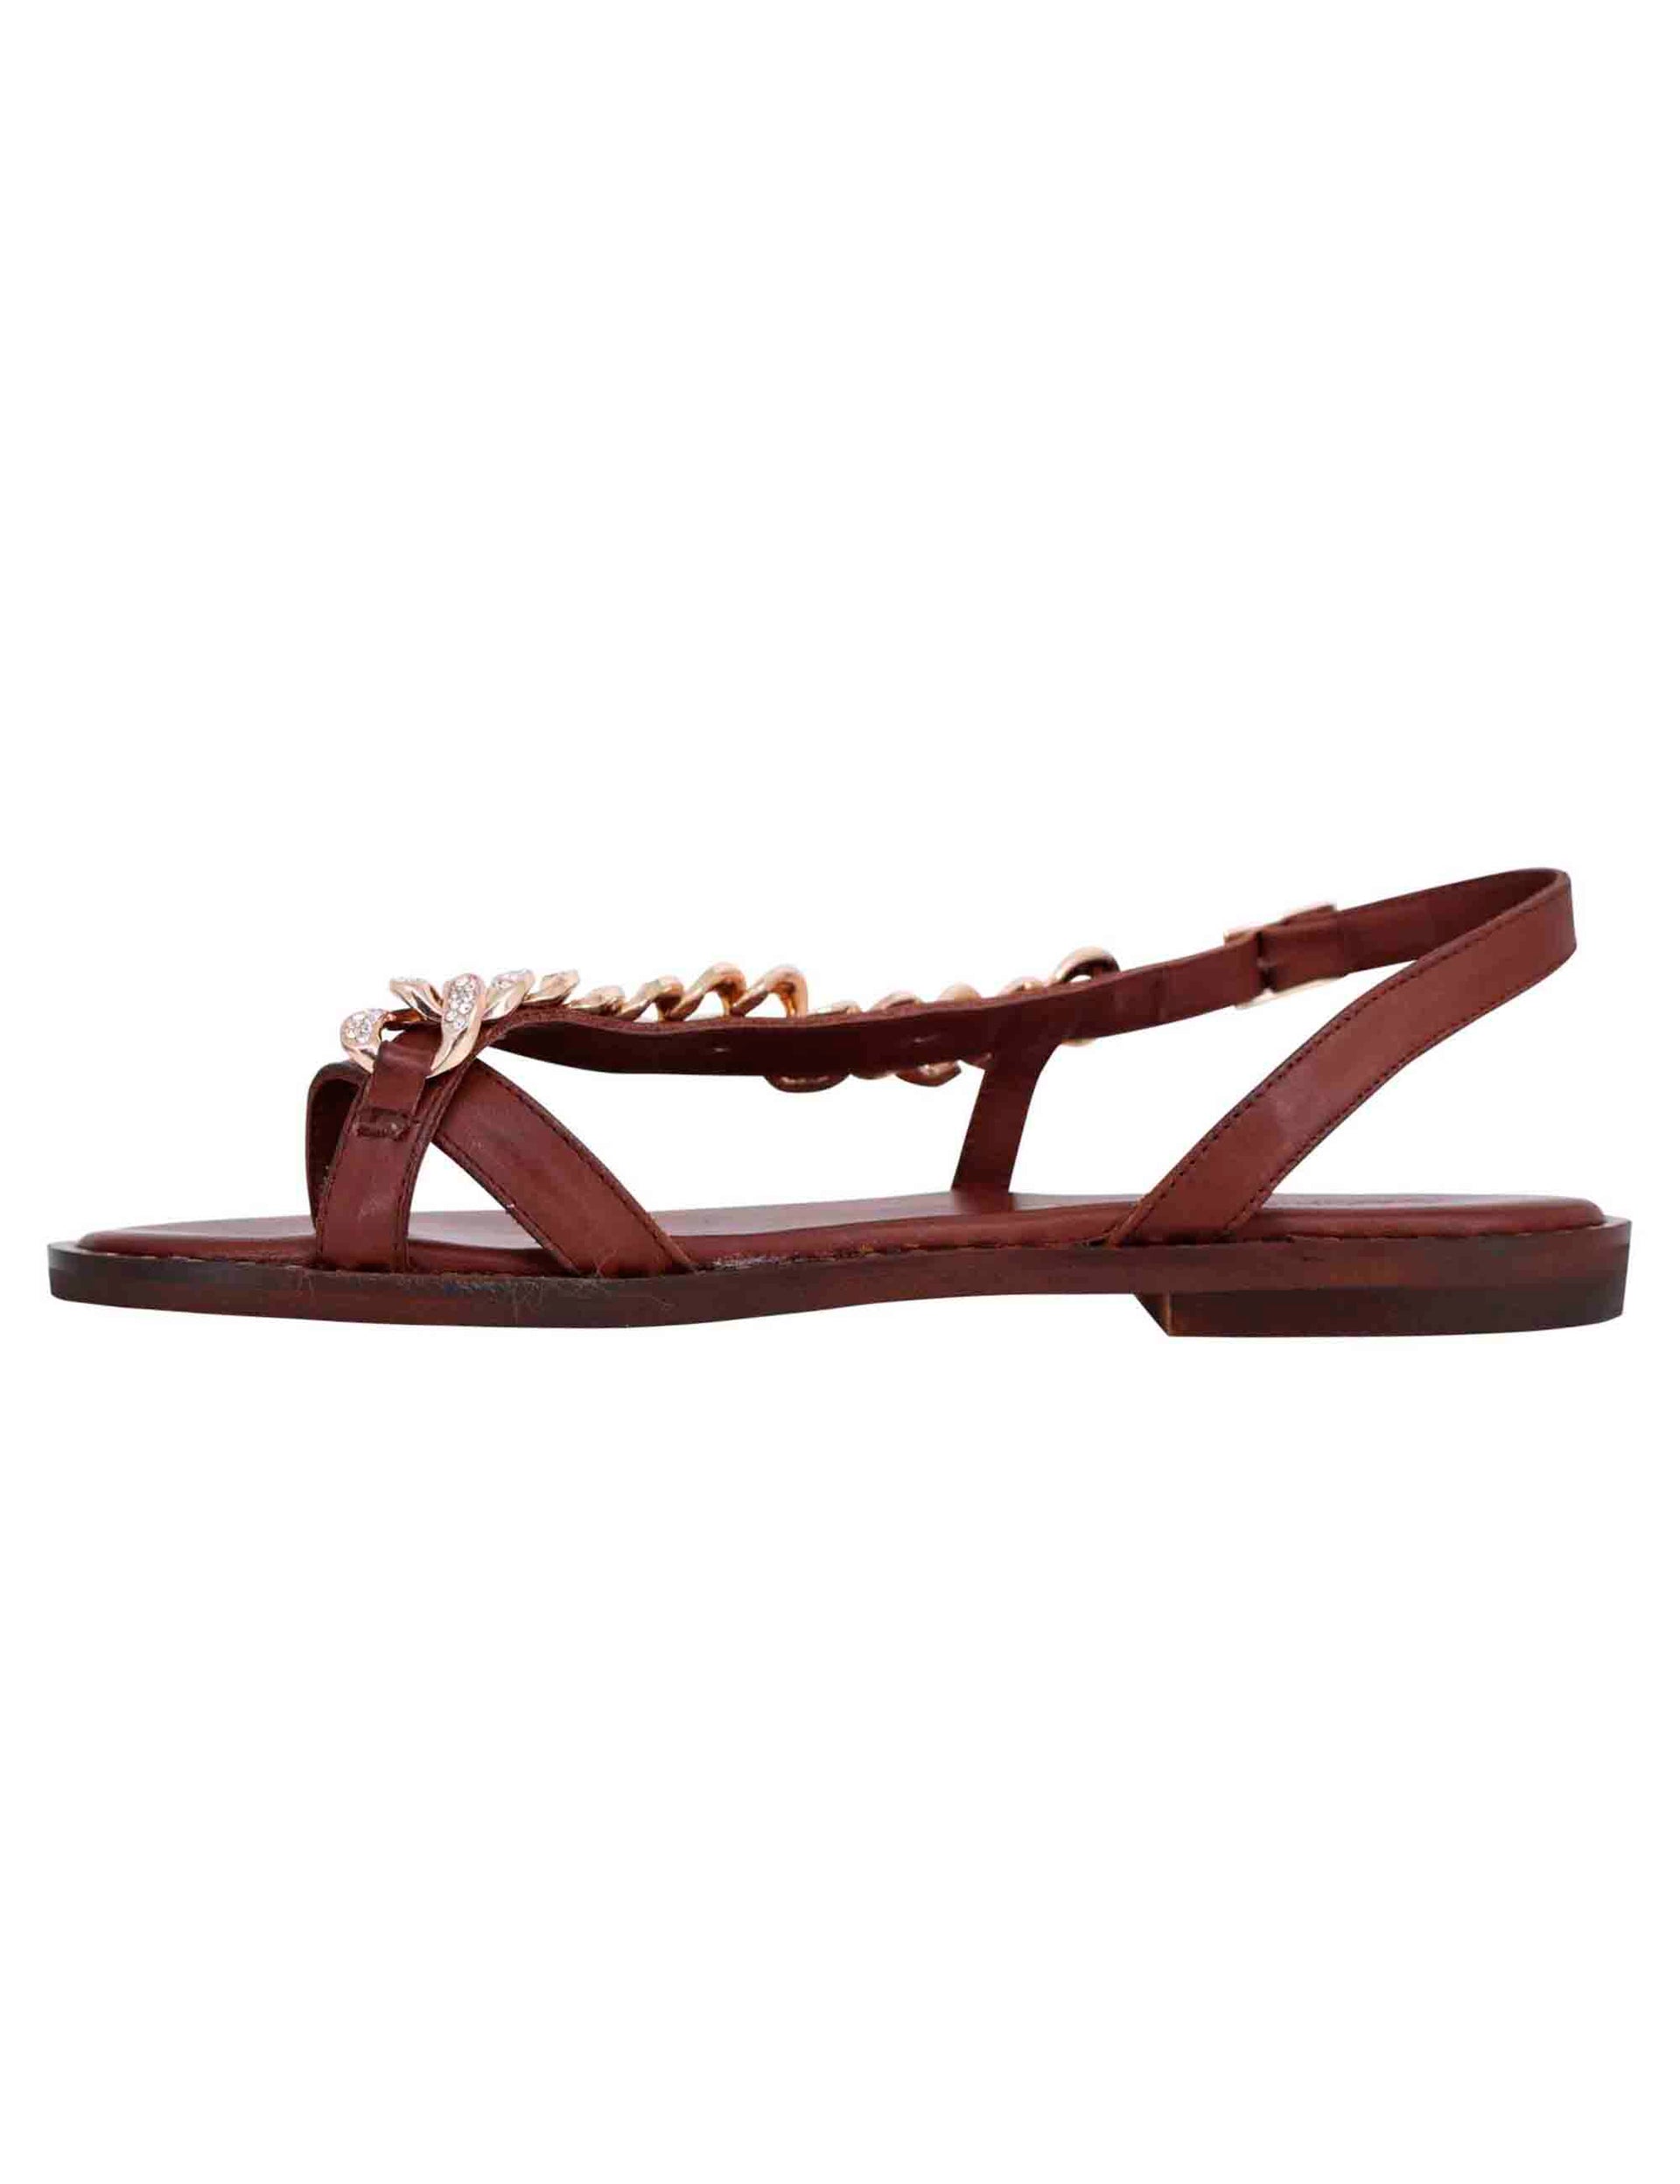 Women's flat flip-flop sandals in dark brown leather with rhinestone chain